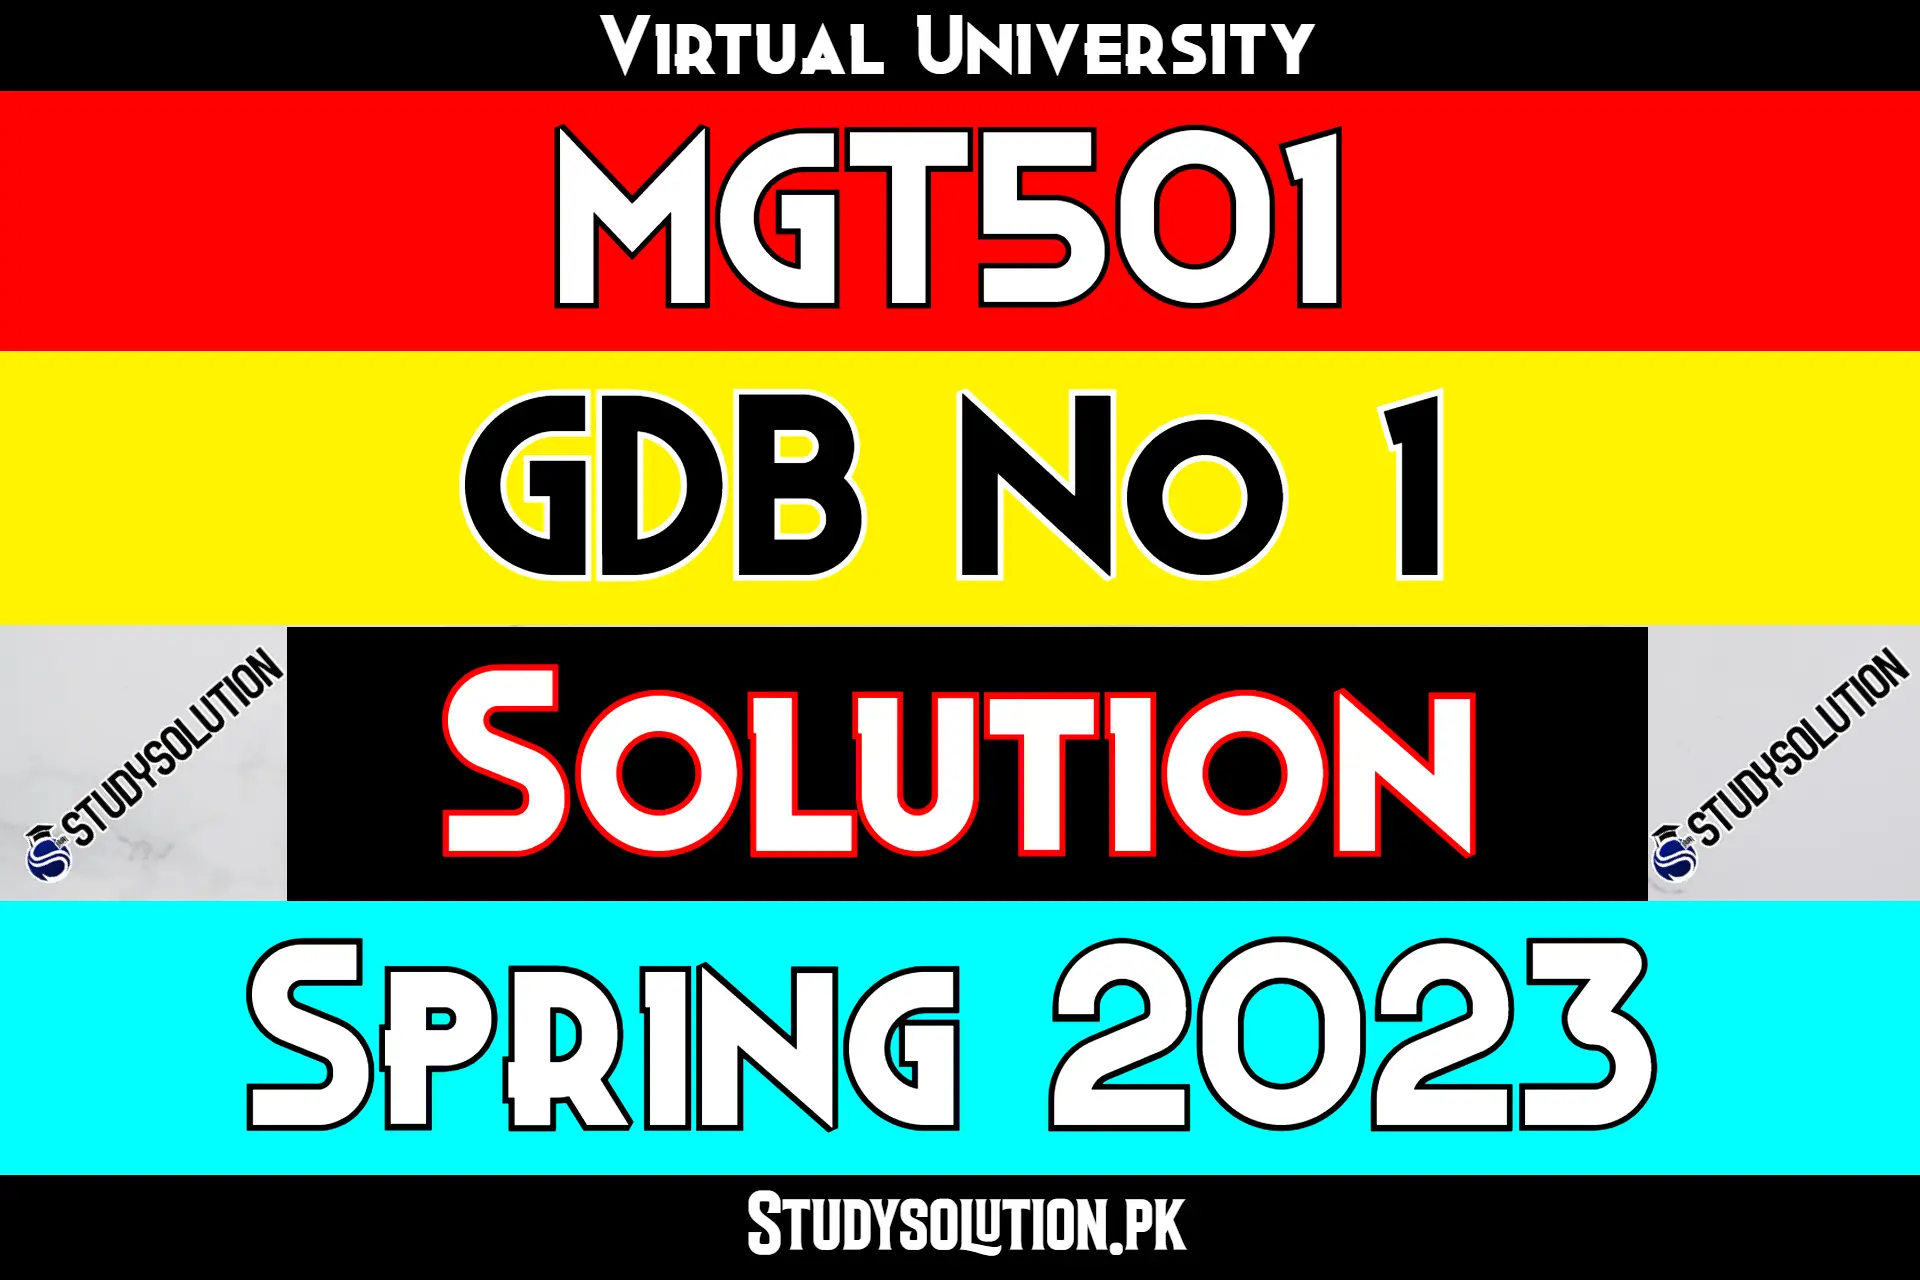 MGT501 GDB No 1 Solution Spring 2023